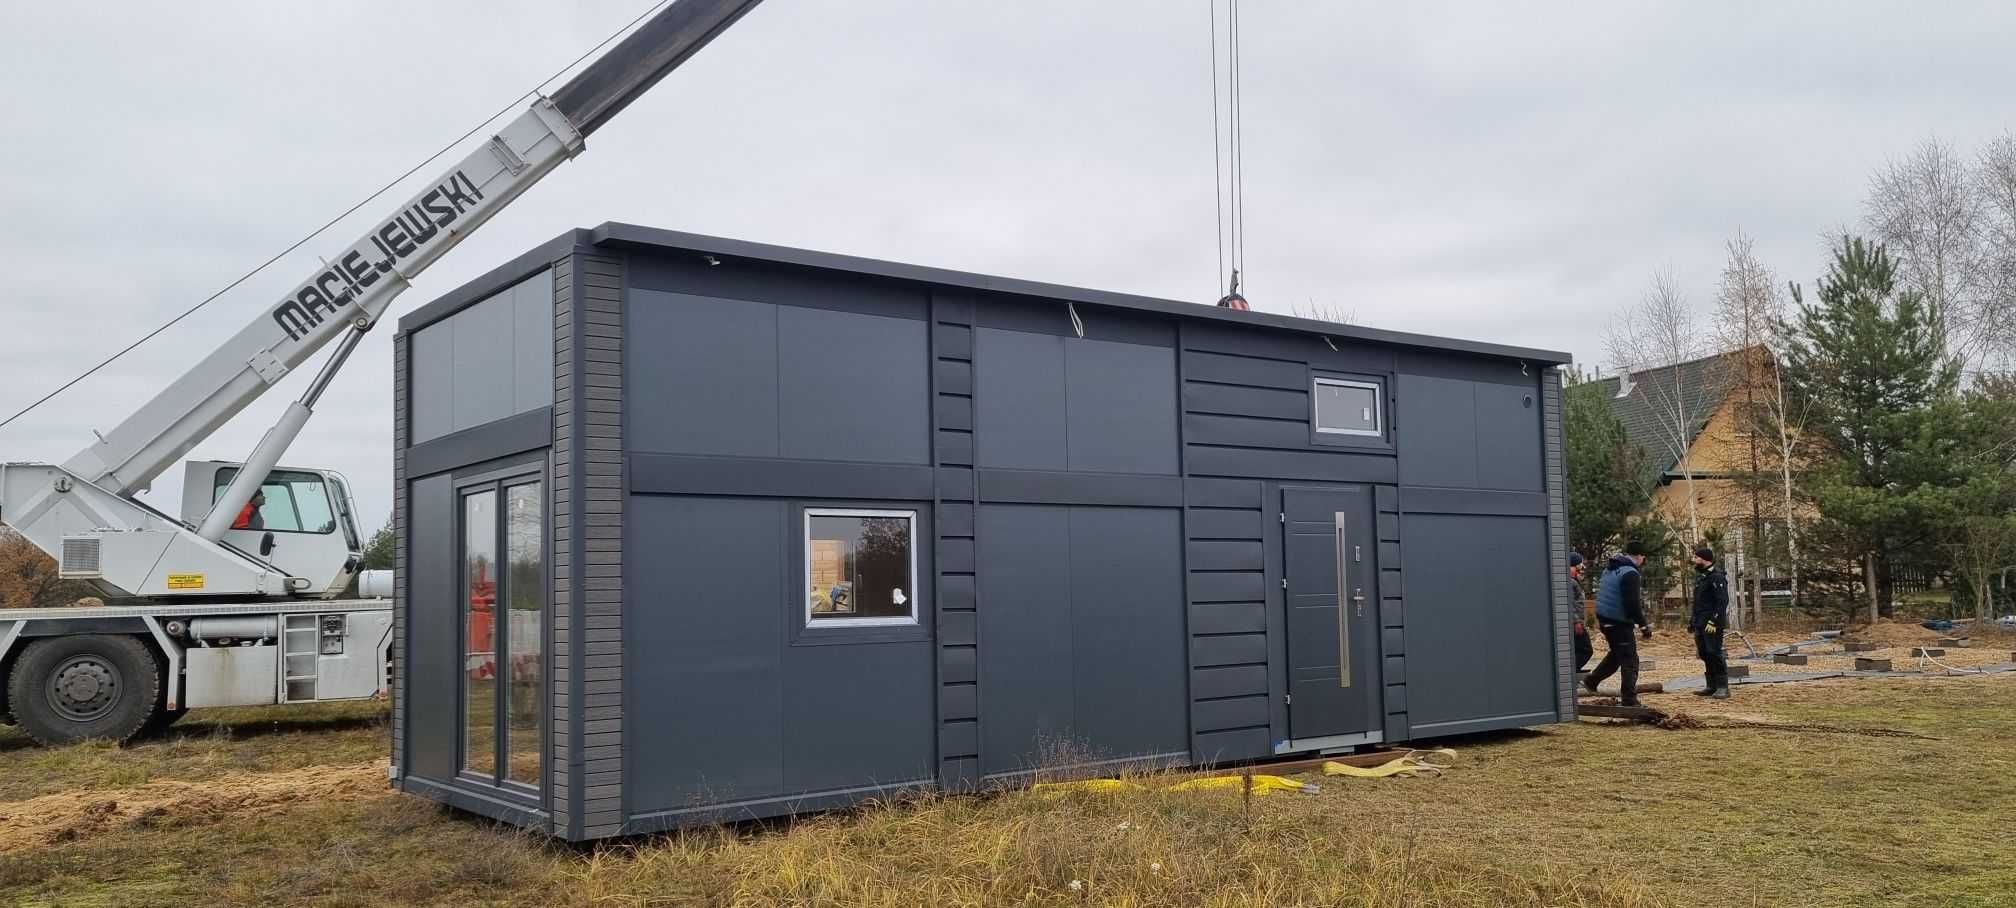 domek dom holenderski całoroczny nowy 35m2 dostępny od ręki producent